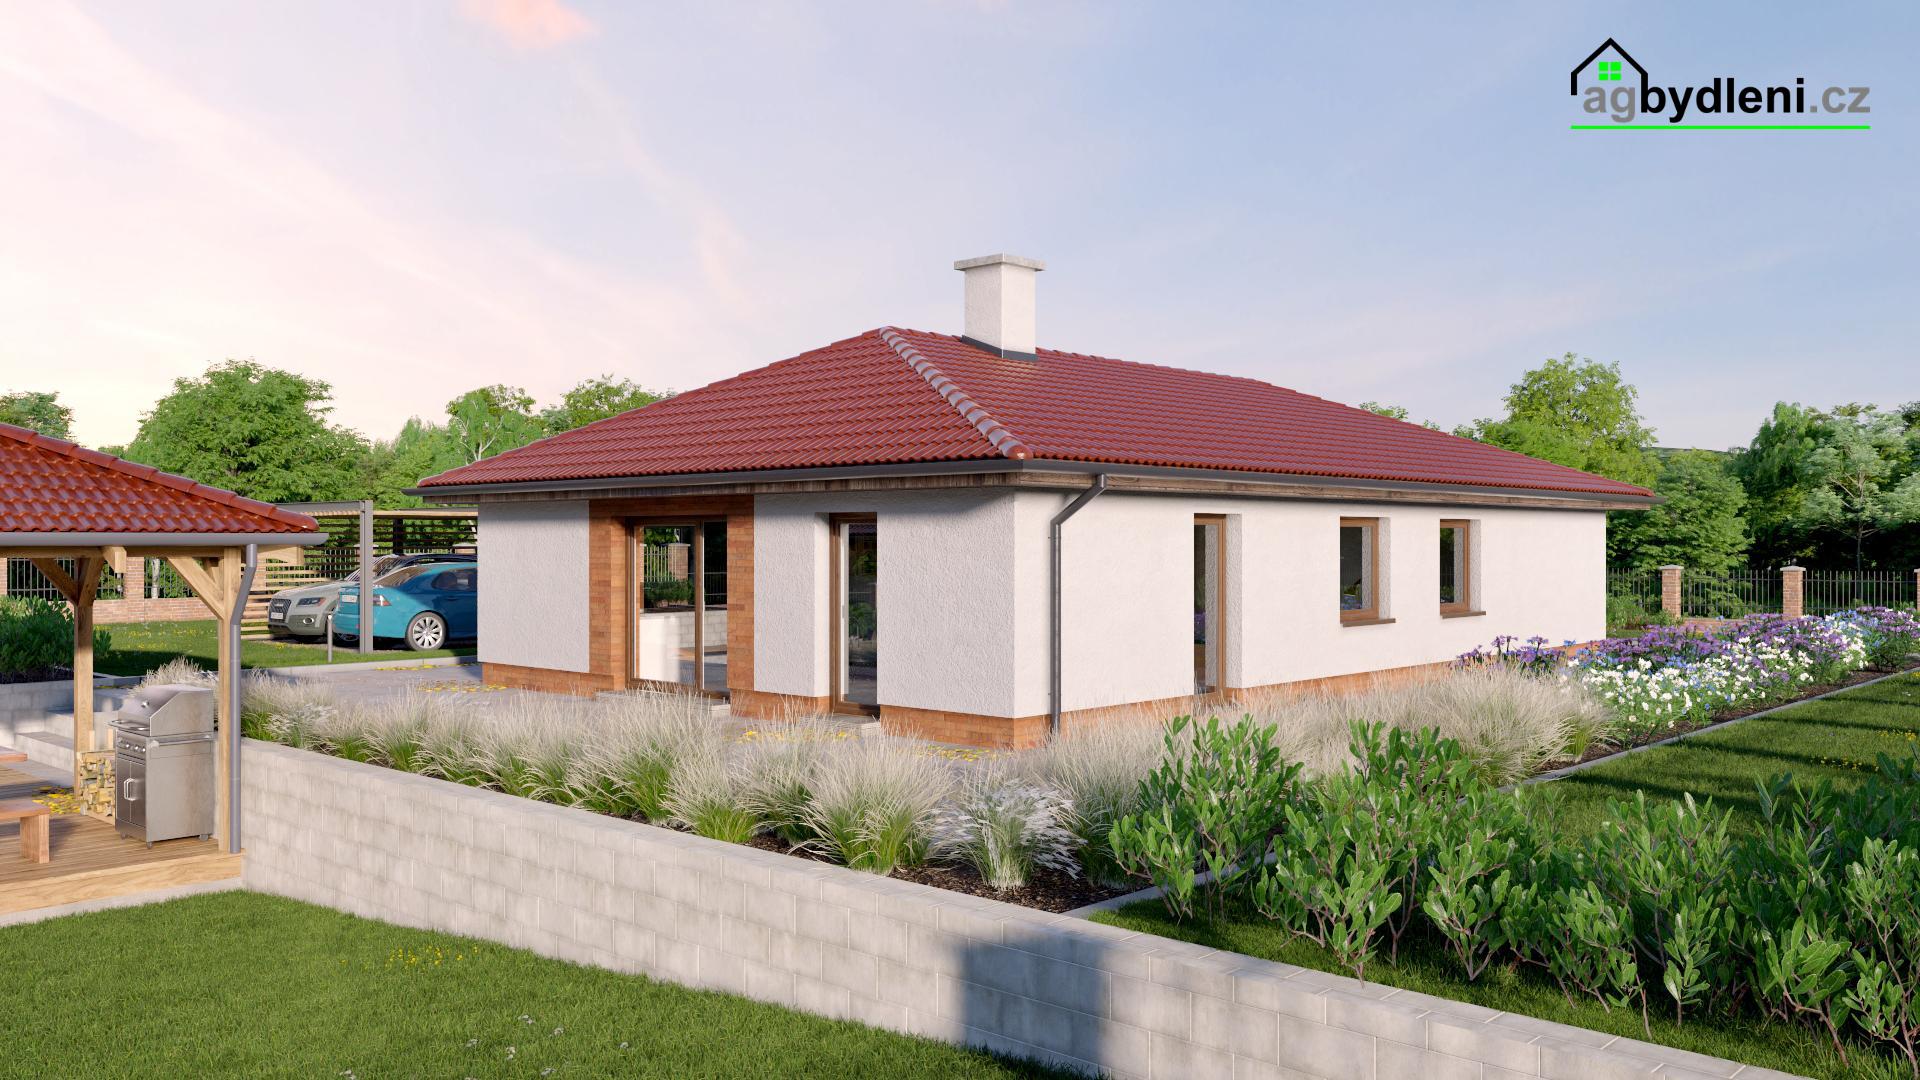 Prodej novostavby rodinného domu typu bungalov na zajištěném pozemku 1249 m2, obrázek č. 3